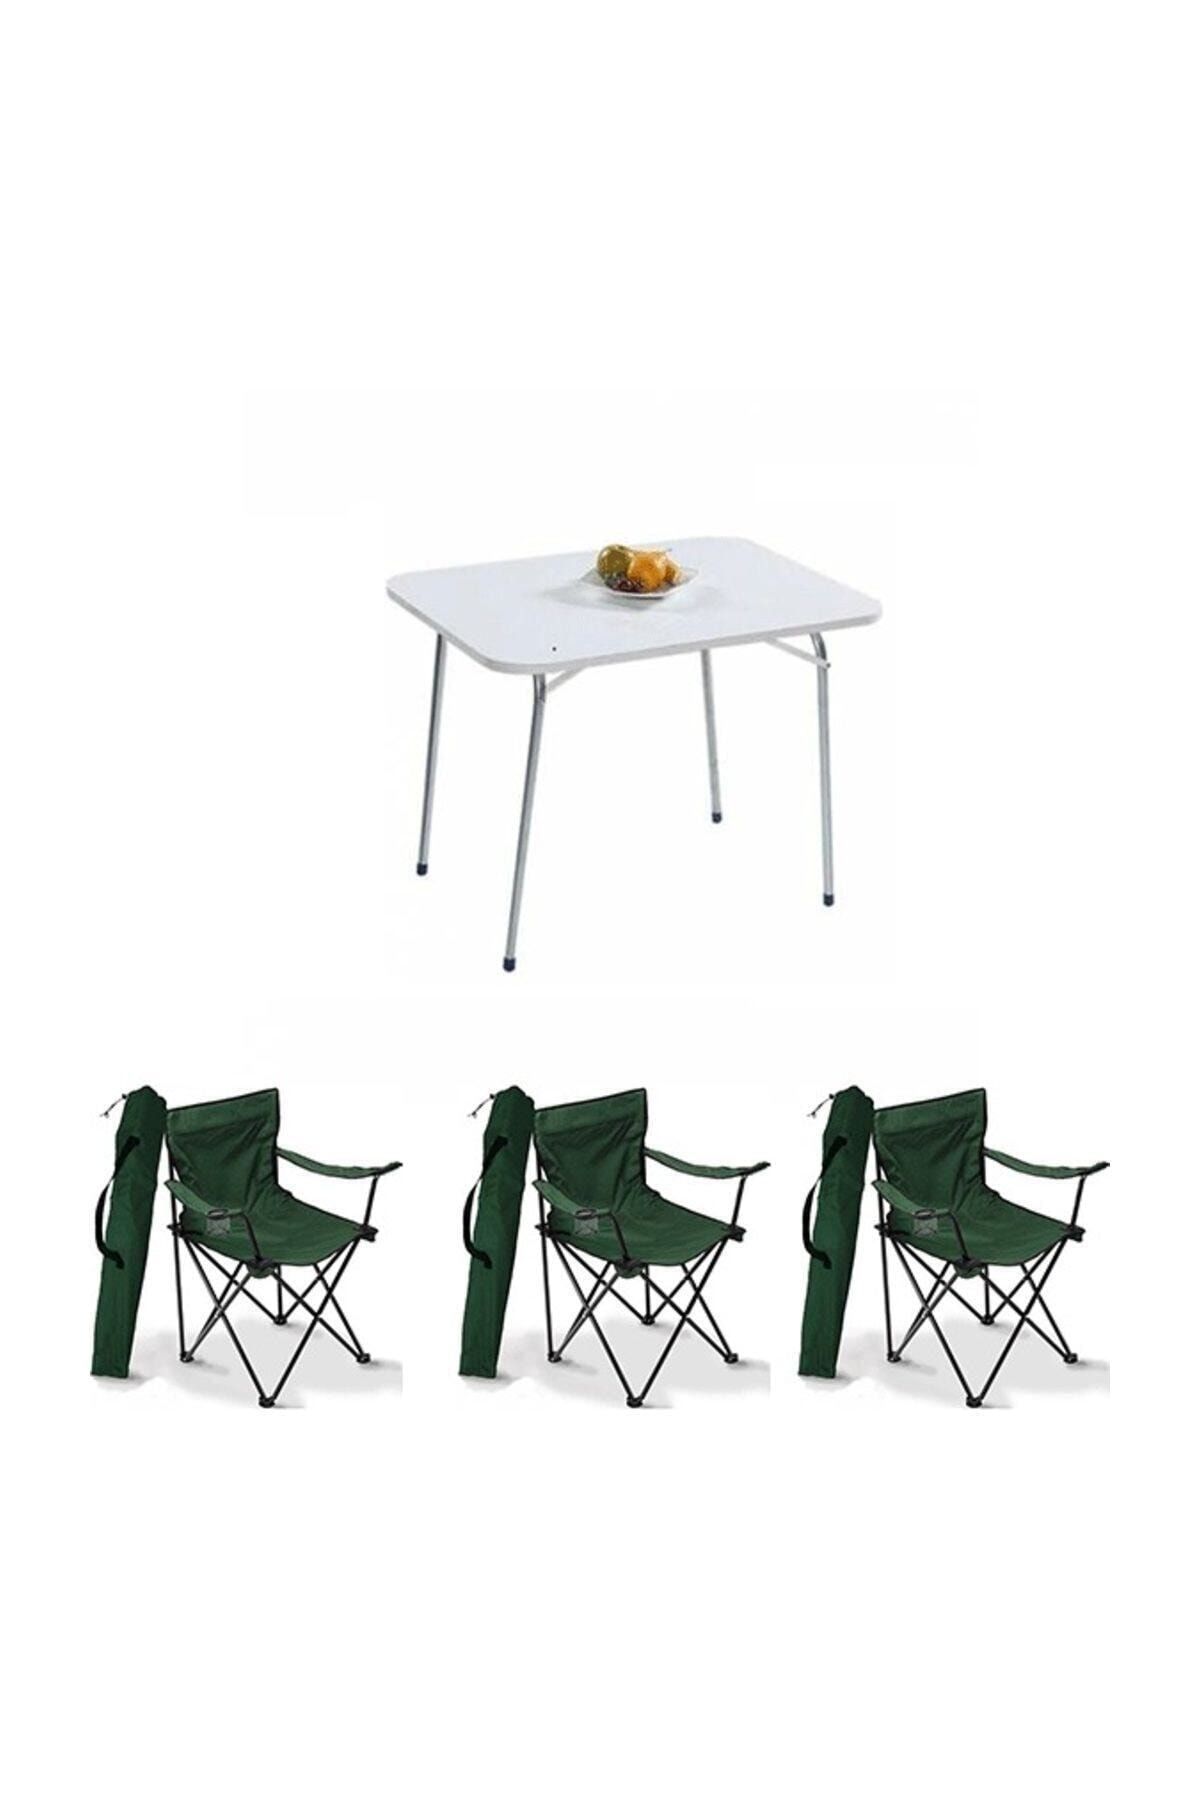 Bofigo Yeşil 60x80 Katlanır Masa + 3 Adet Kamp Katlanır Sandalye Piknik Plaj Set